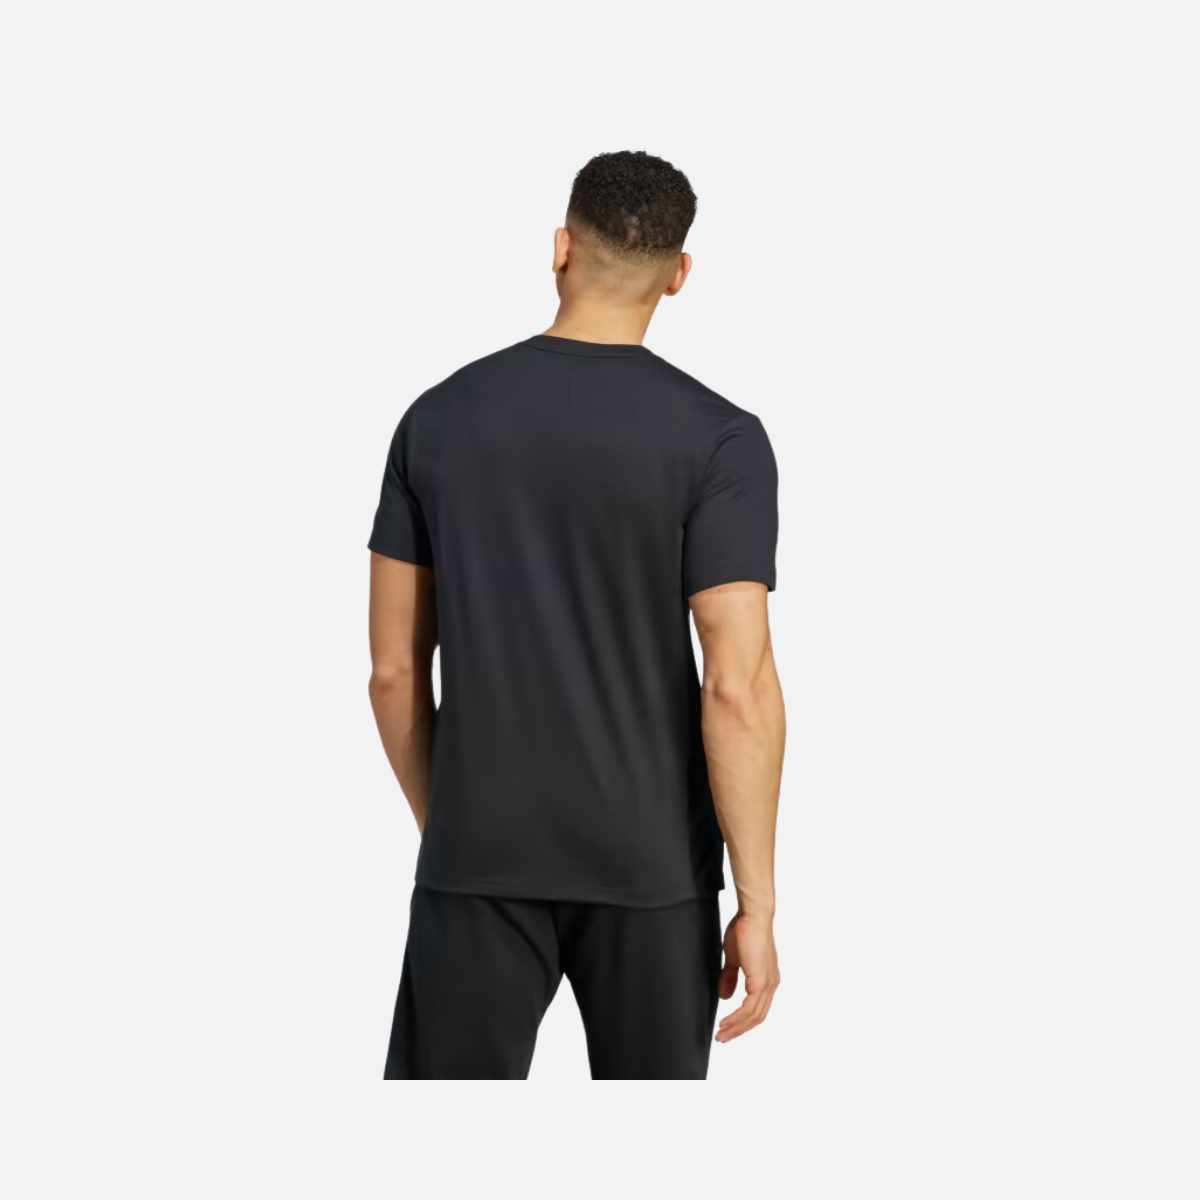 Adidas Men's Yoga Training T-shirt -Black